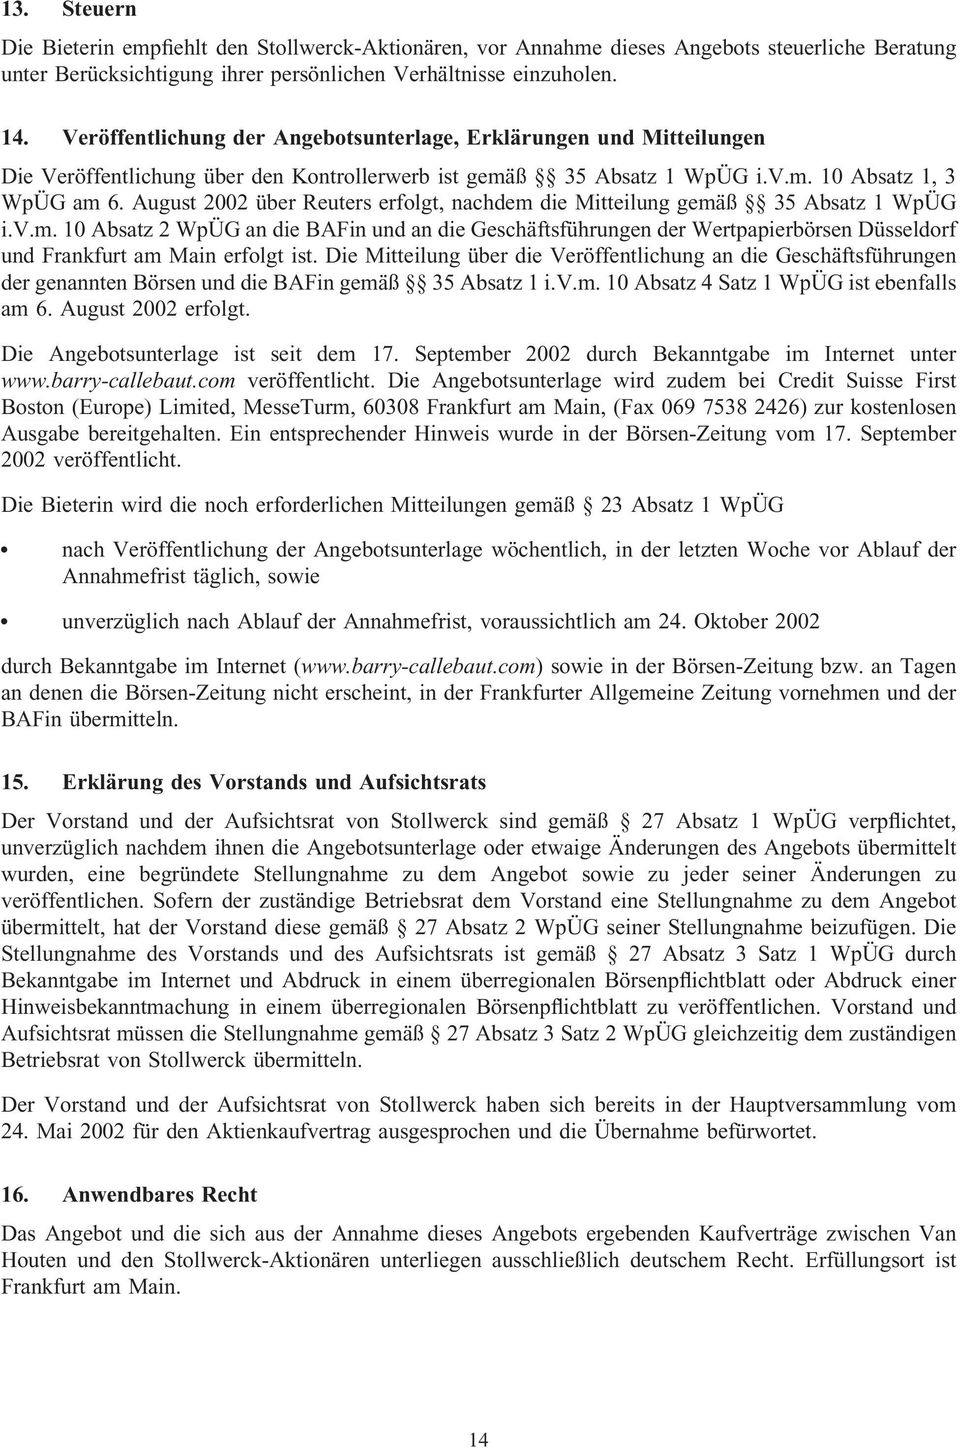 August 2002 über Reuters erfolgt, nachdem die Mitteilung gemäß 35 Absatz 1 WpÜG i.v.m. 10 Absatz 2 WpÜG an die BAFin und an die Geschäftsführungen der Wertpapierbörsen Düsseldorf und Frankfurt am Main erfolgt ist.